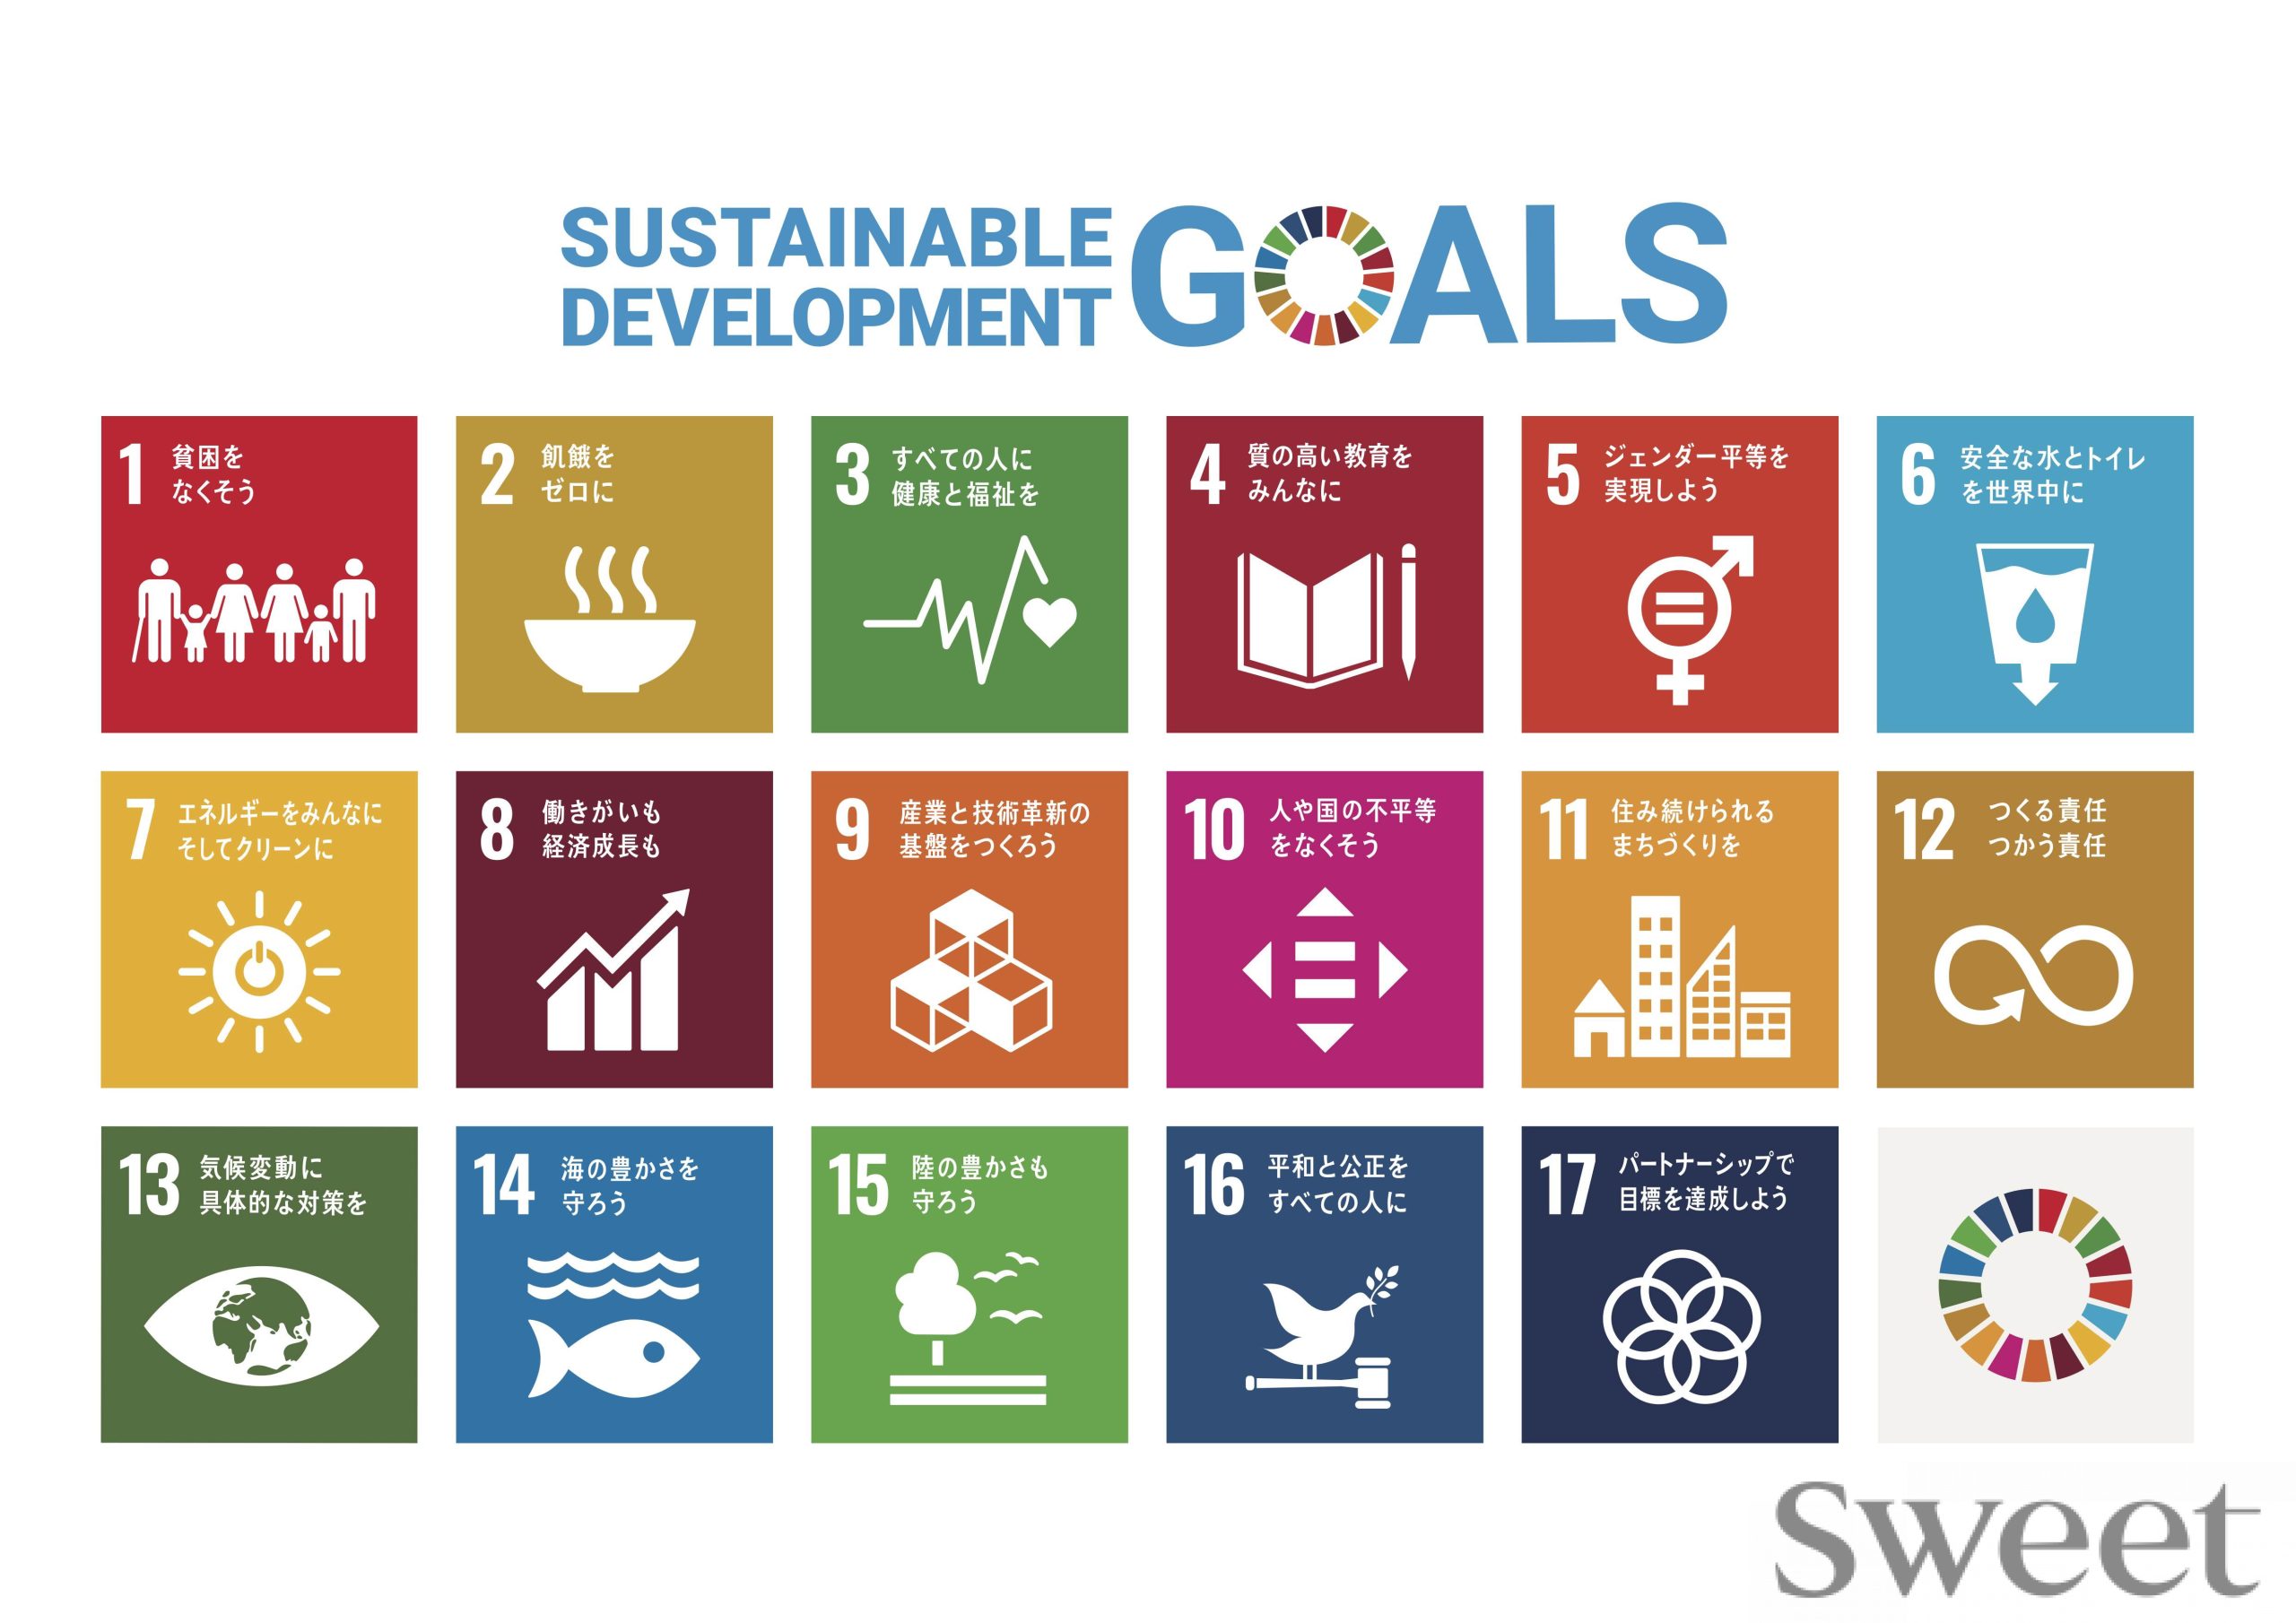 SDGsをもっとよく知ろう！ 今すぐできるTips#5